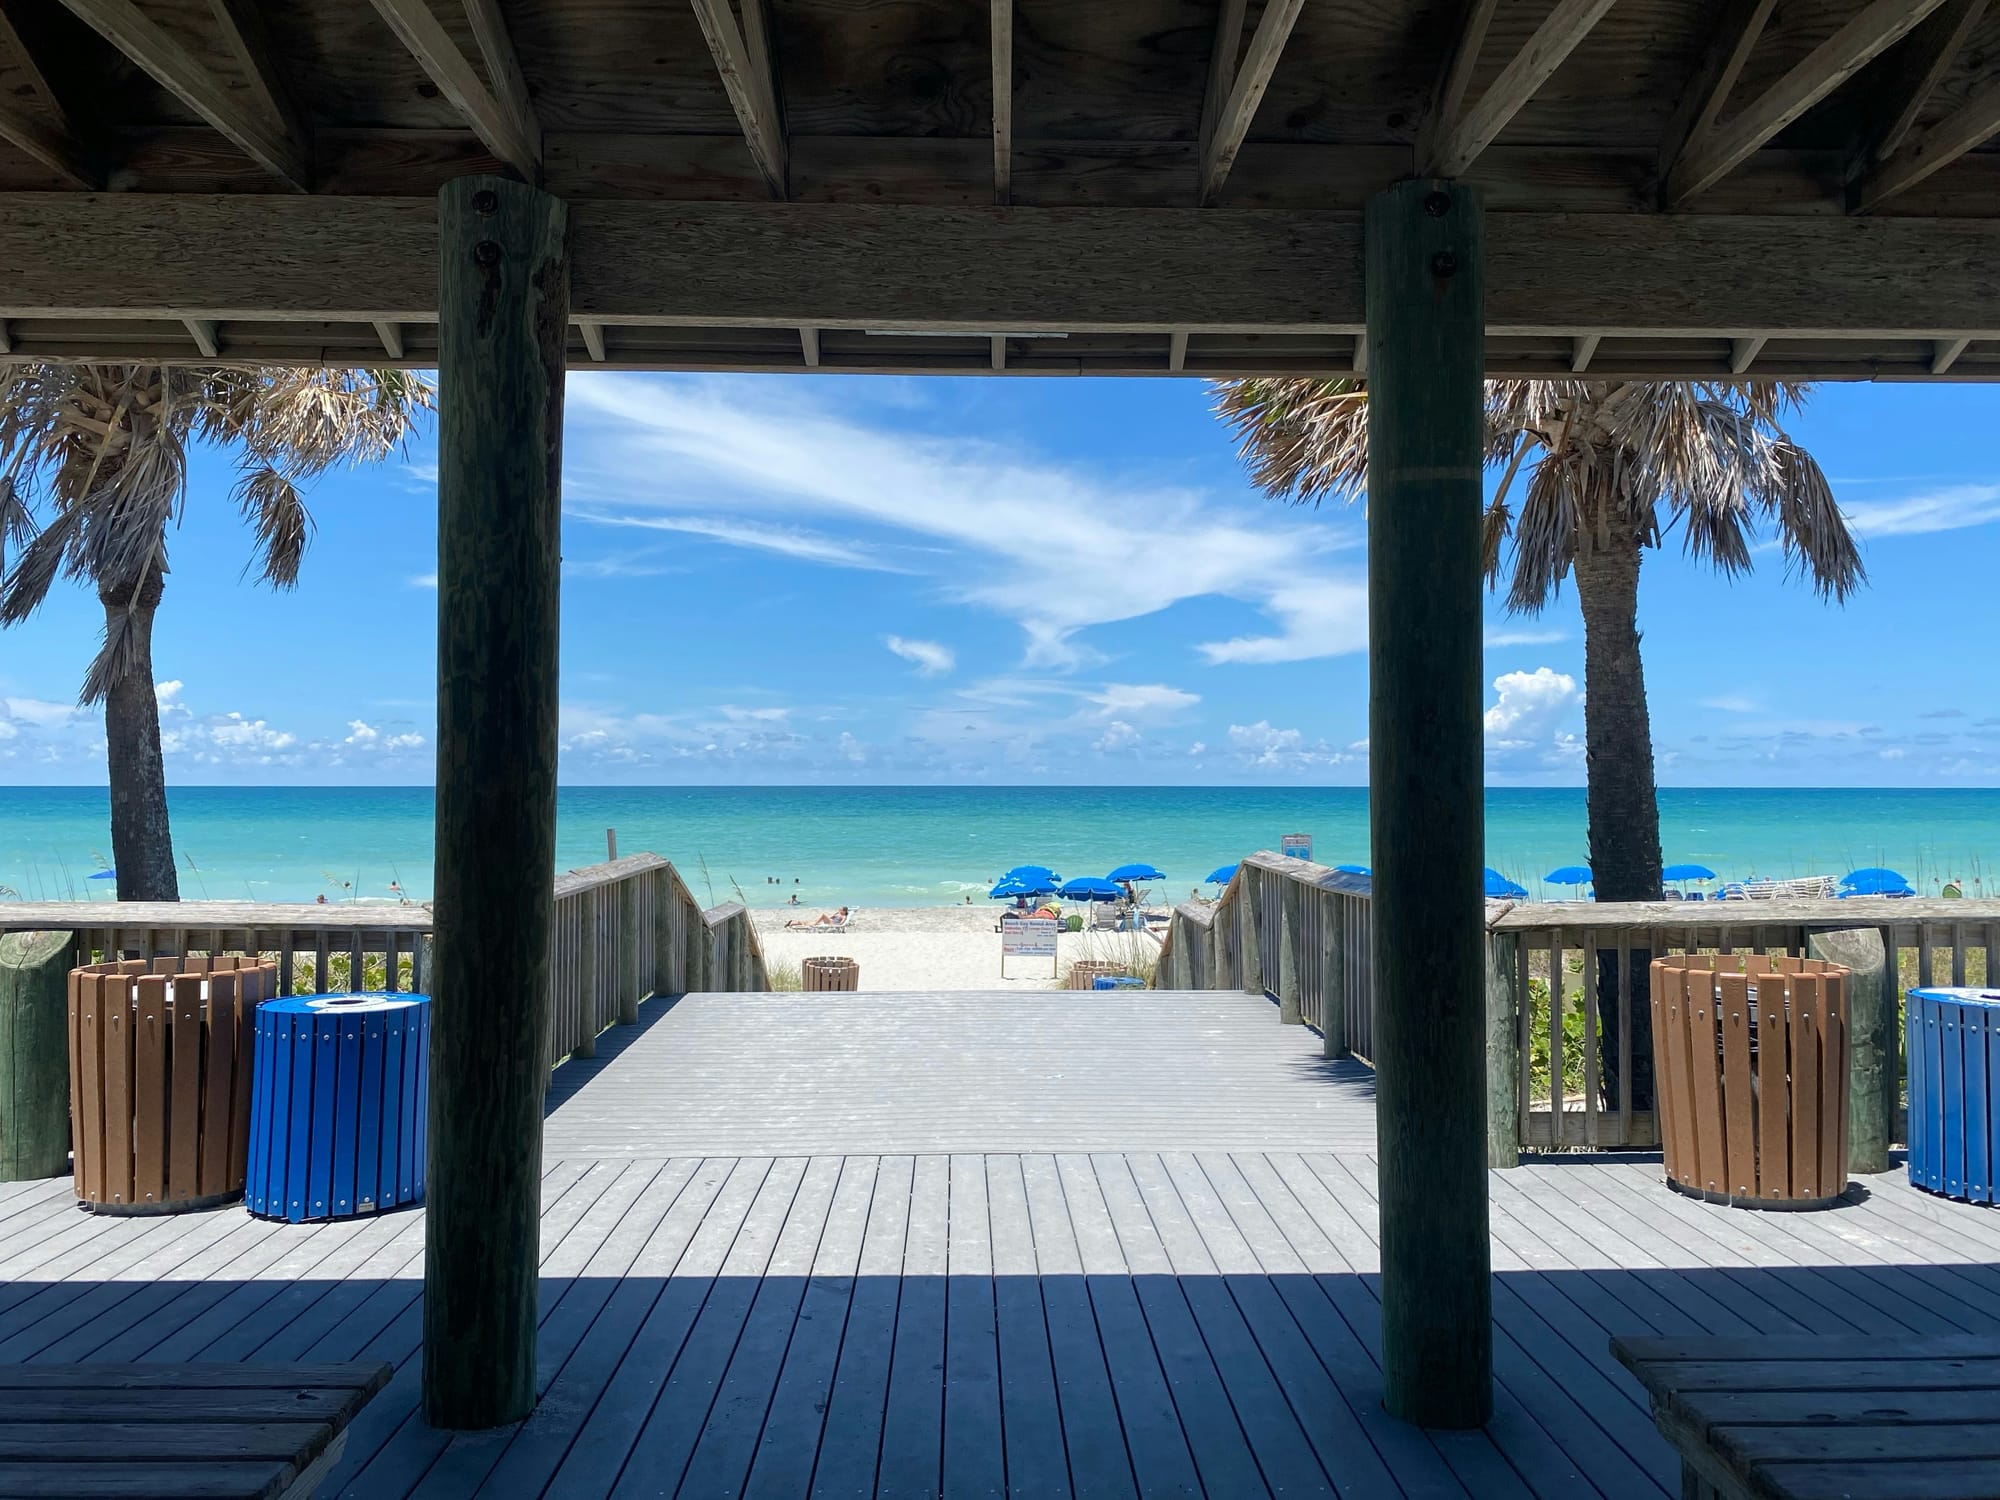 Best Florida Keys near Tampa and Sarasota